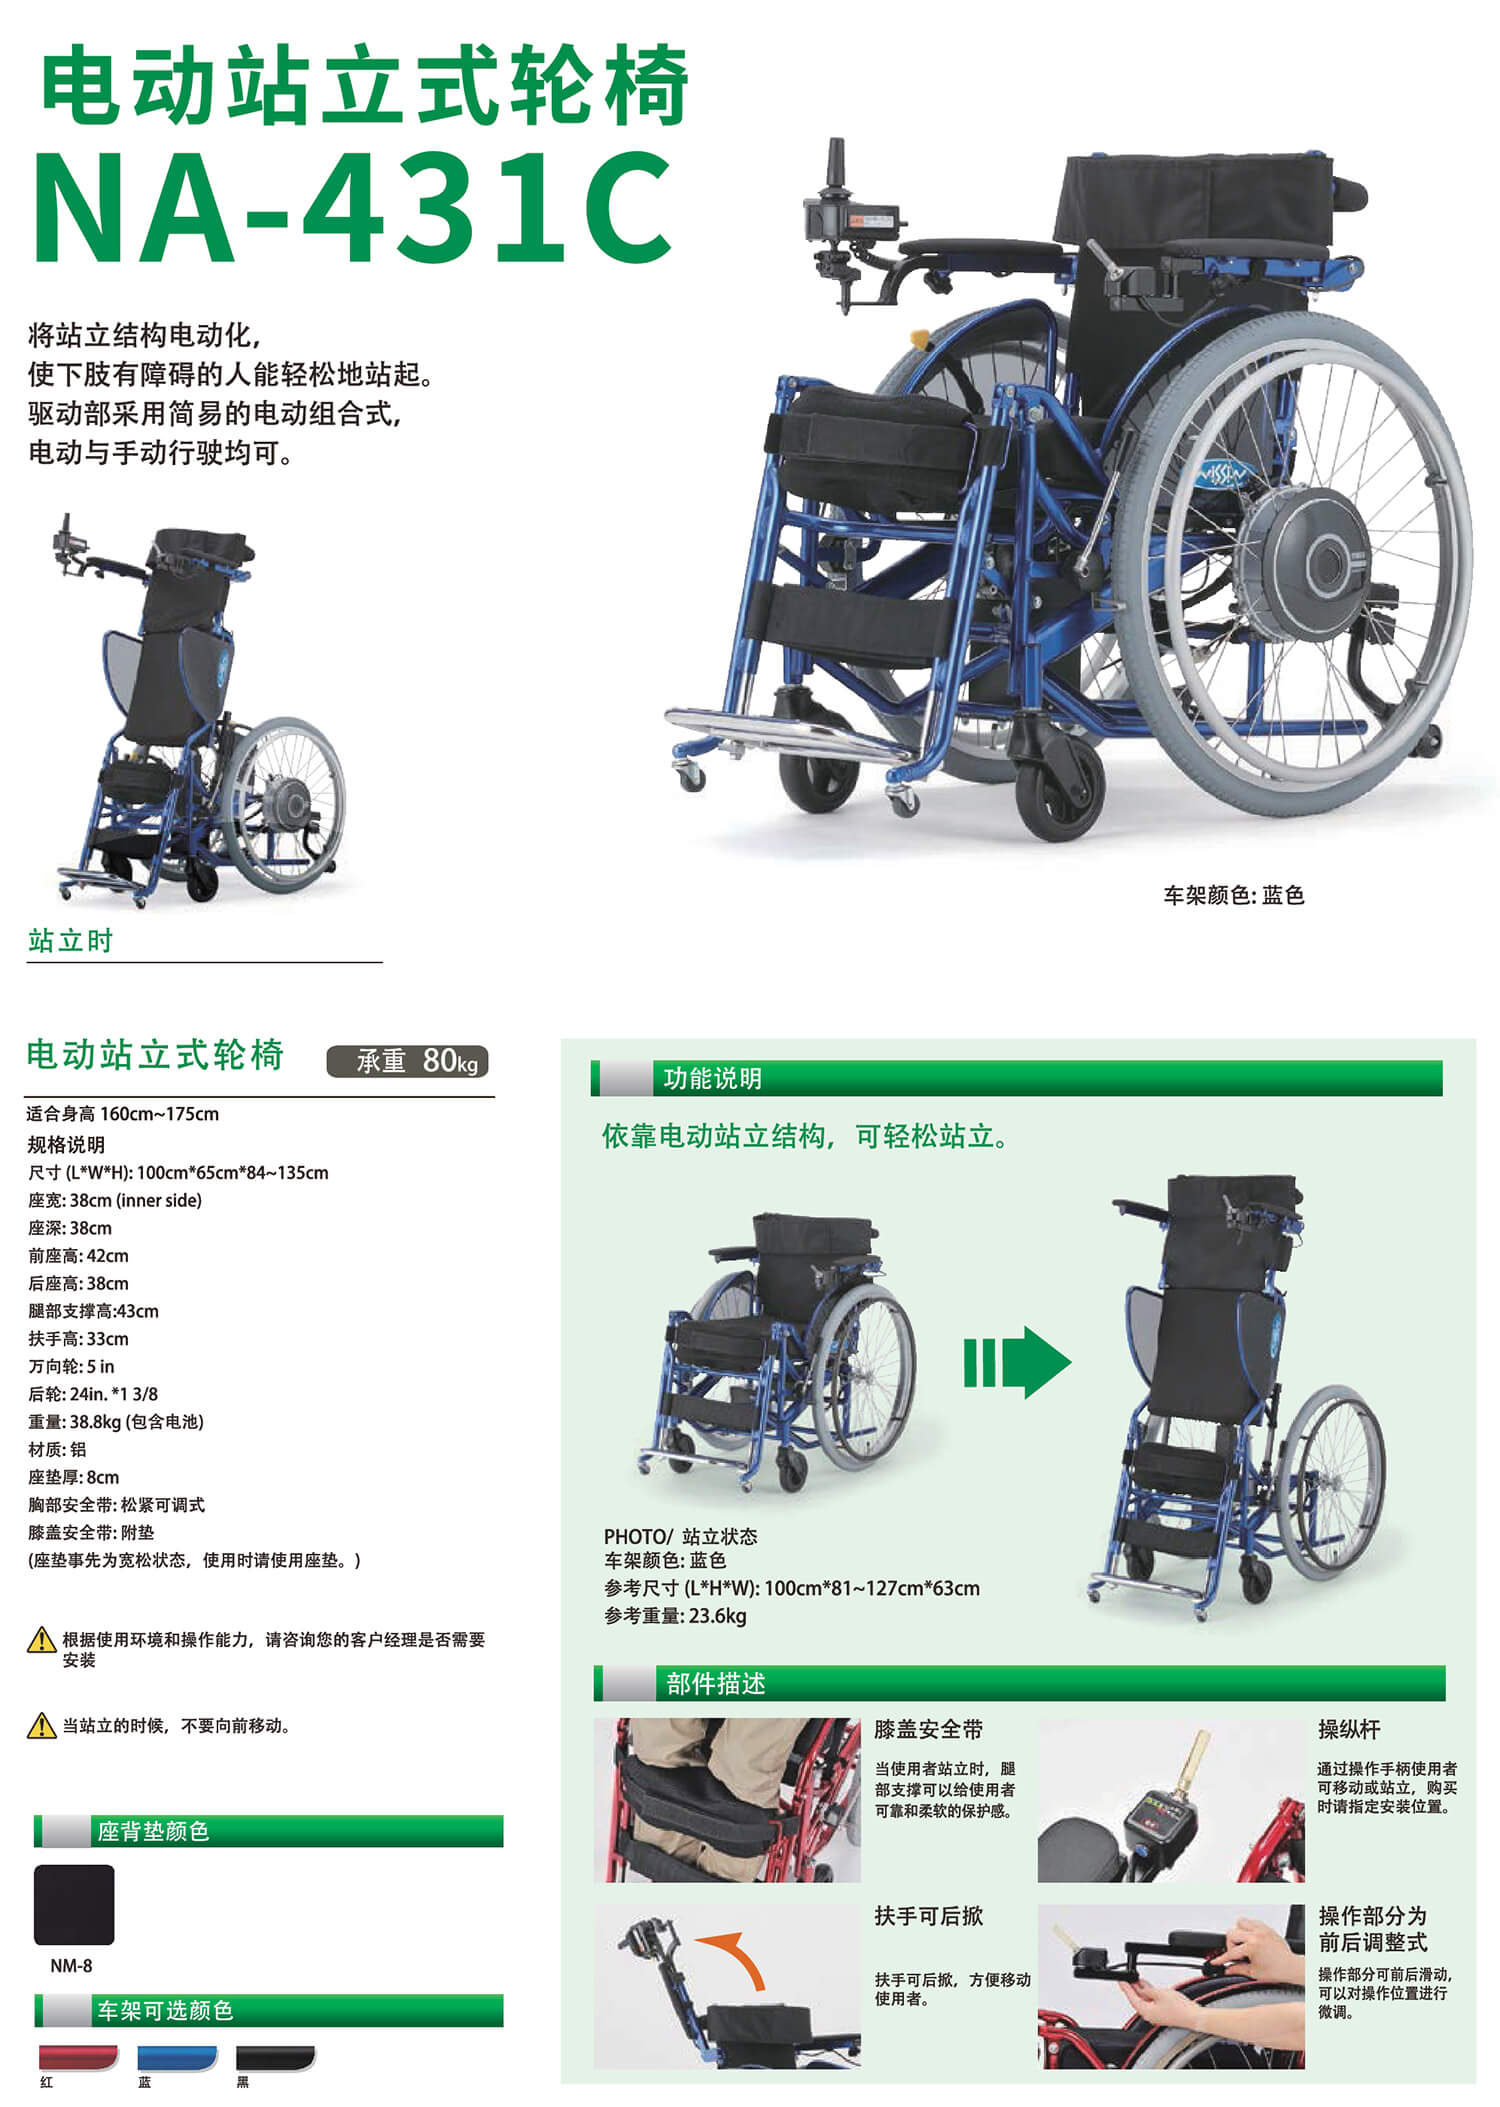 53-62电动轮椅_复制_复制 - 副本-004.jpg